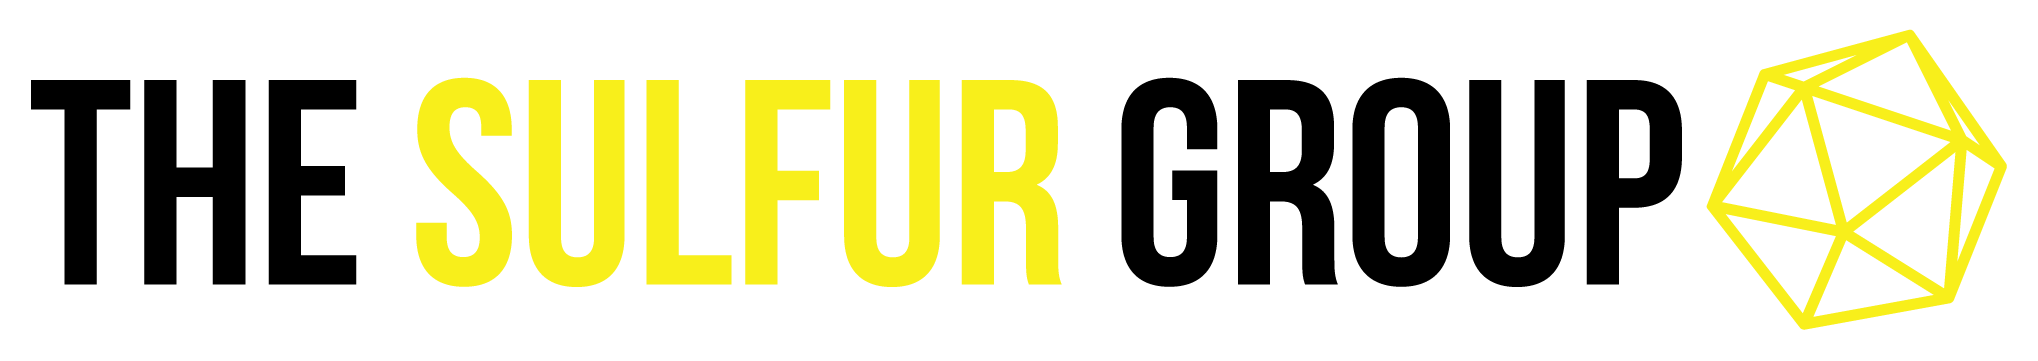 Sulfur-Logo-Wide-Color.png